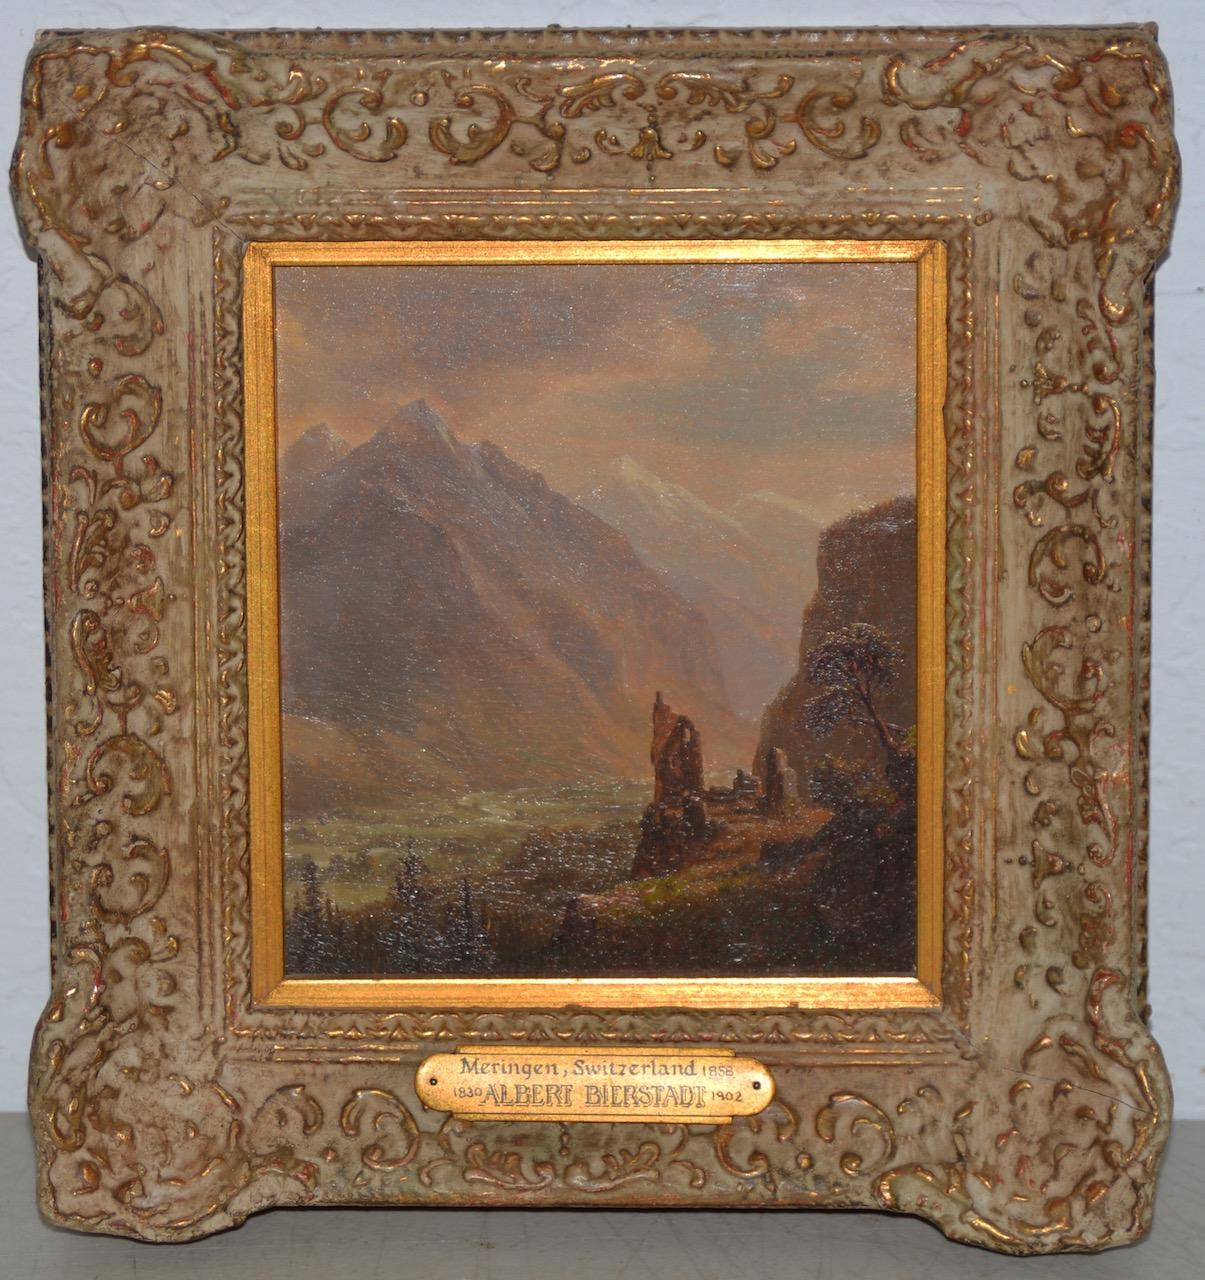 Albert Bierstadt "Valley of Meringen, Switzerland" oil on panel, circa 1858